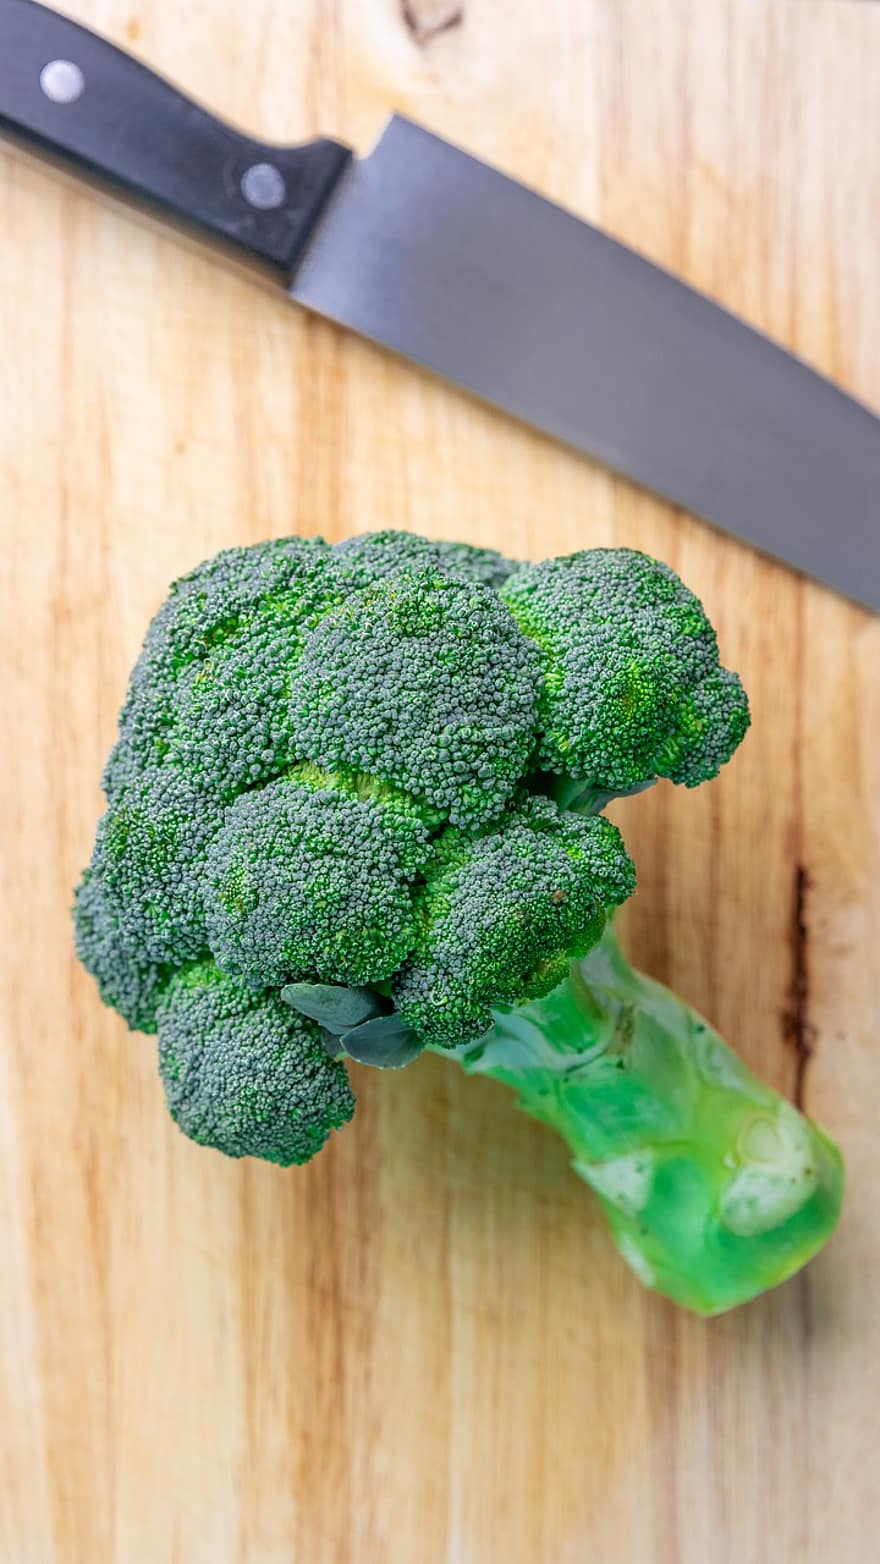 brokkoli, növényi, egészséges, nyers, organikus, vegetáriánus, táplálás